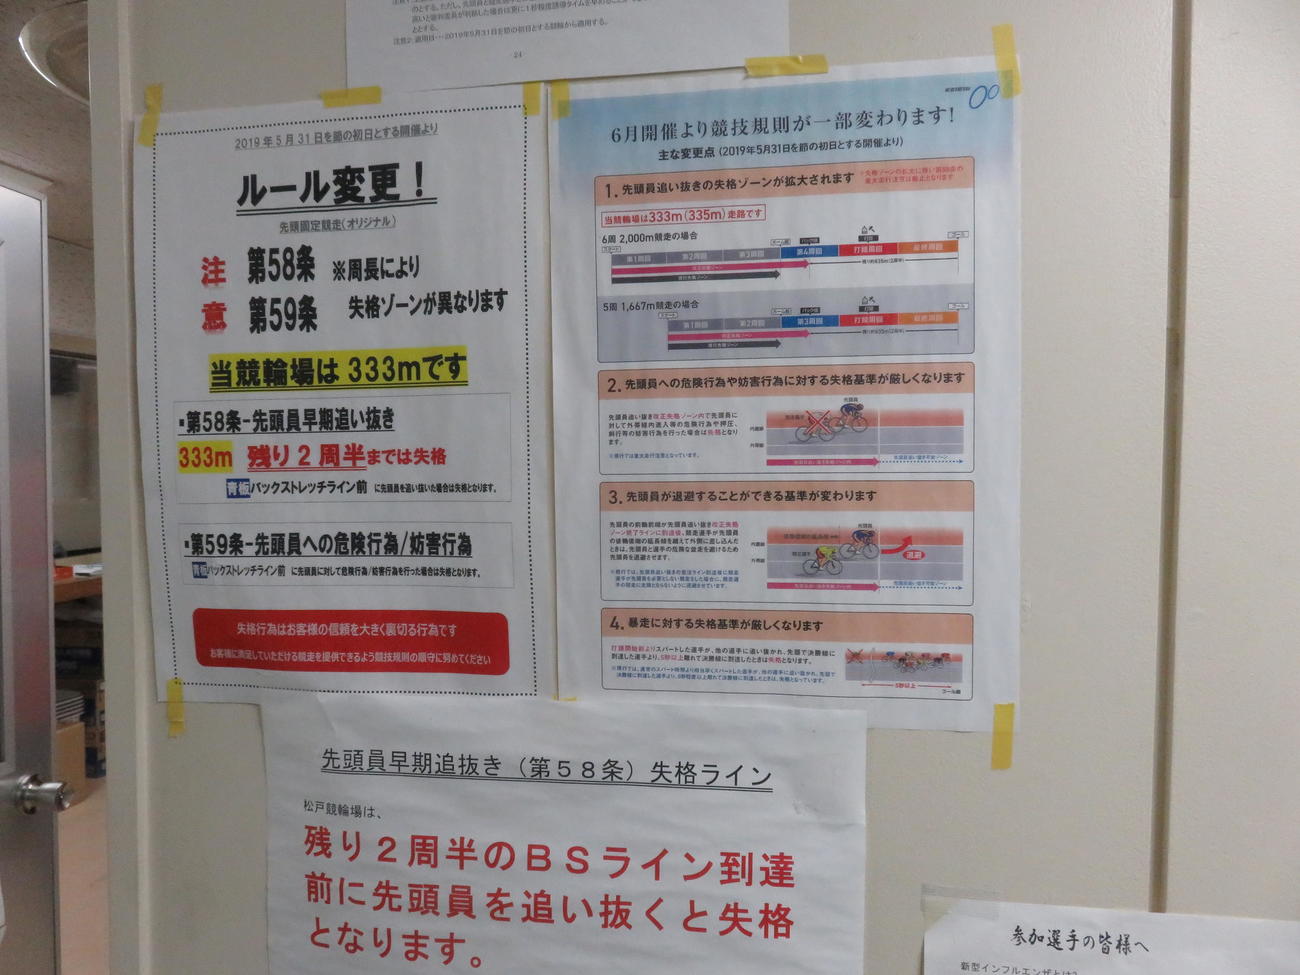 松戸競輪場の控室に掲示されている早期追い抜きと誘導妨害についての警告文